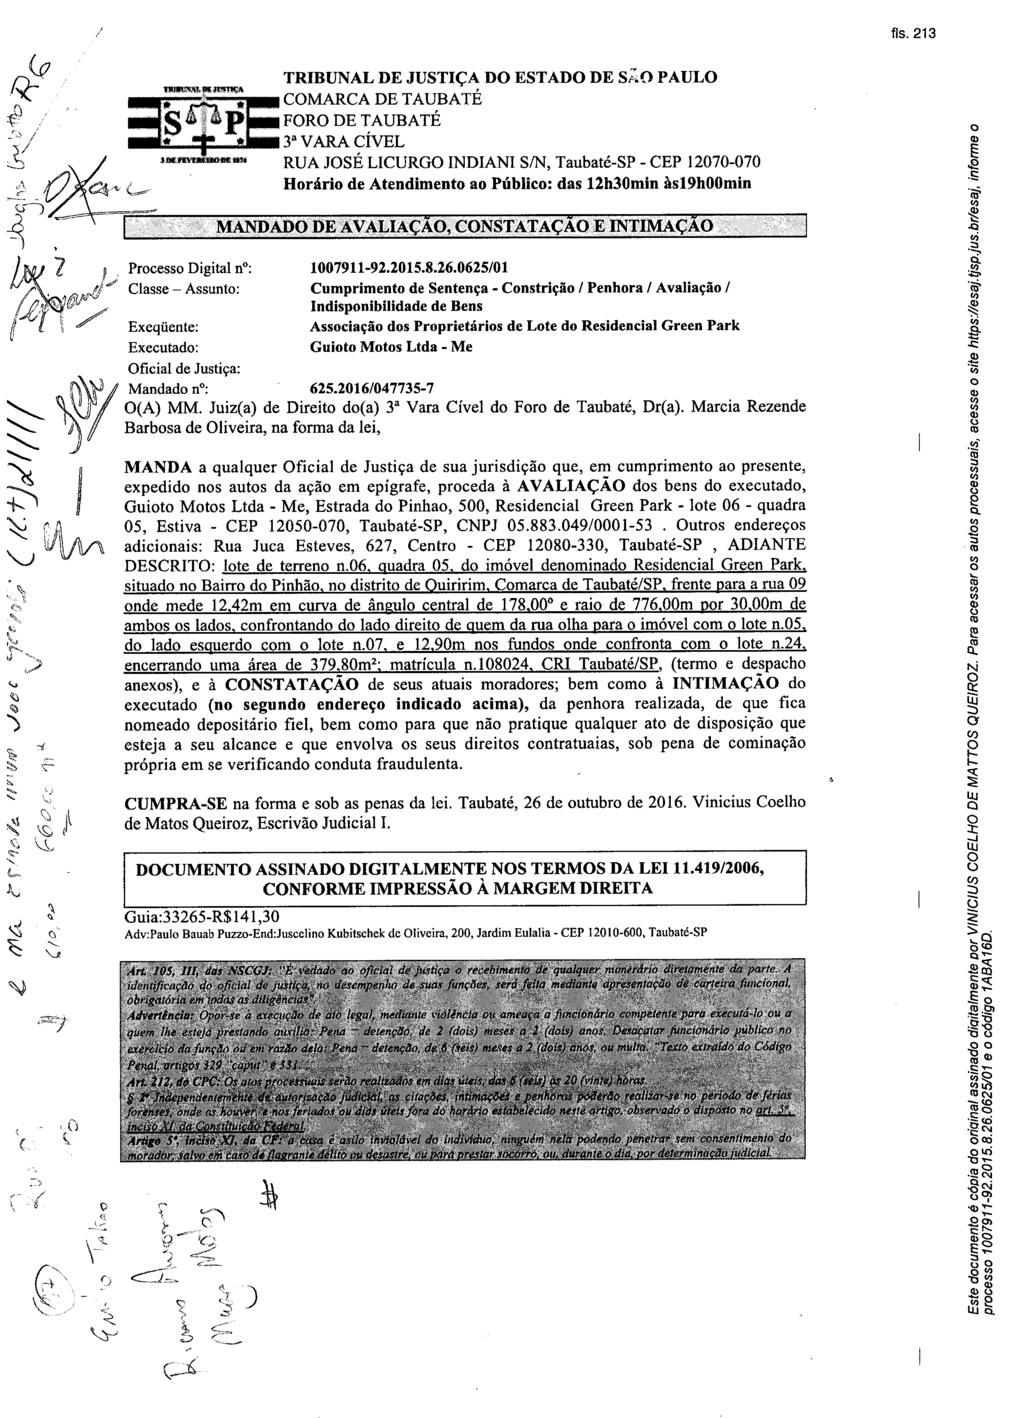 fls. 233 Este documento foi protocolado em 29/11/2016 às 11:27, é cópia do original assinado digitalmente por TIAGO RODRIGUES DOS SANTOS